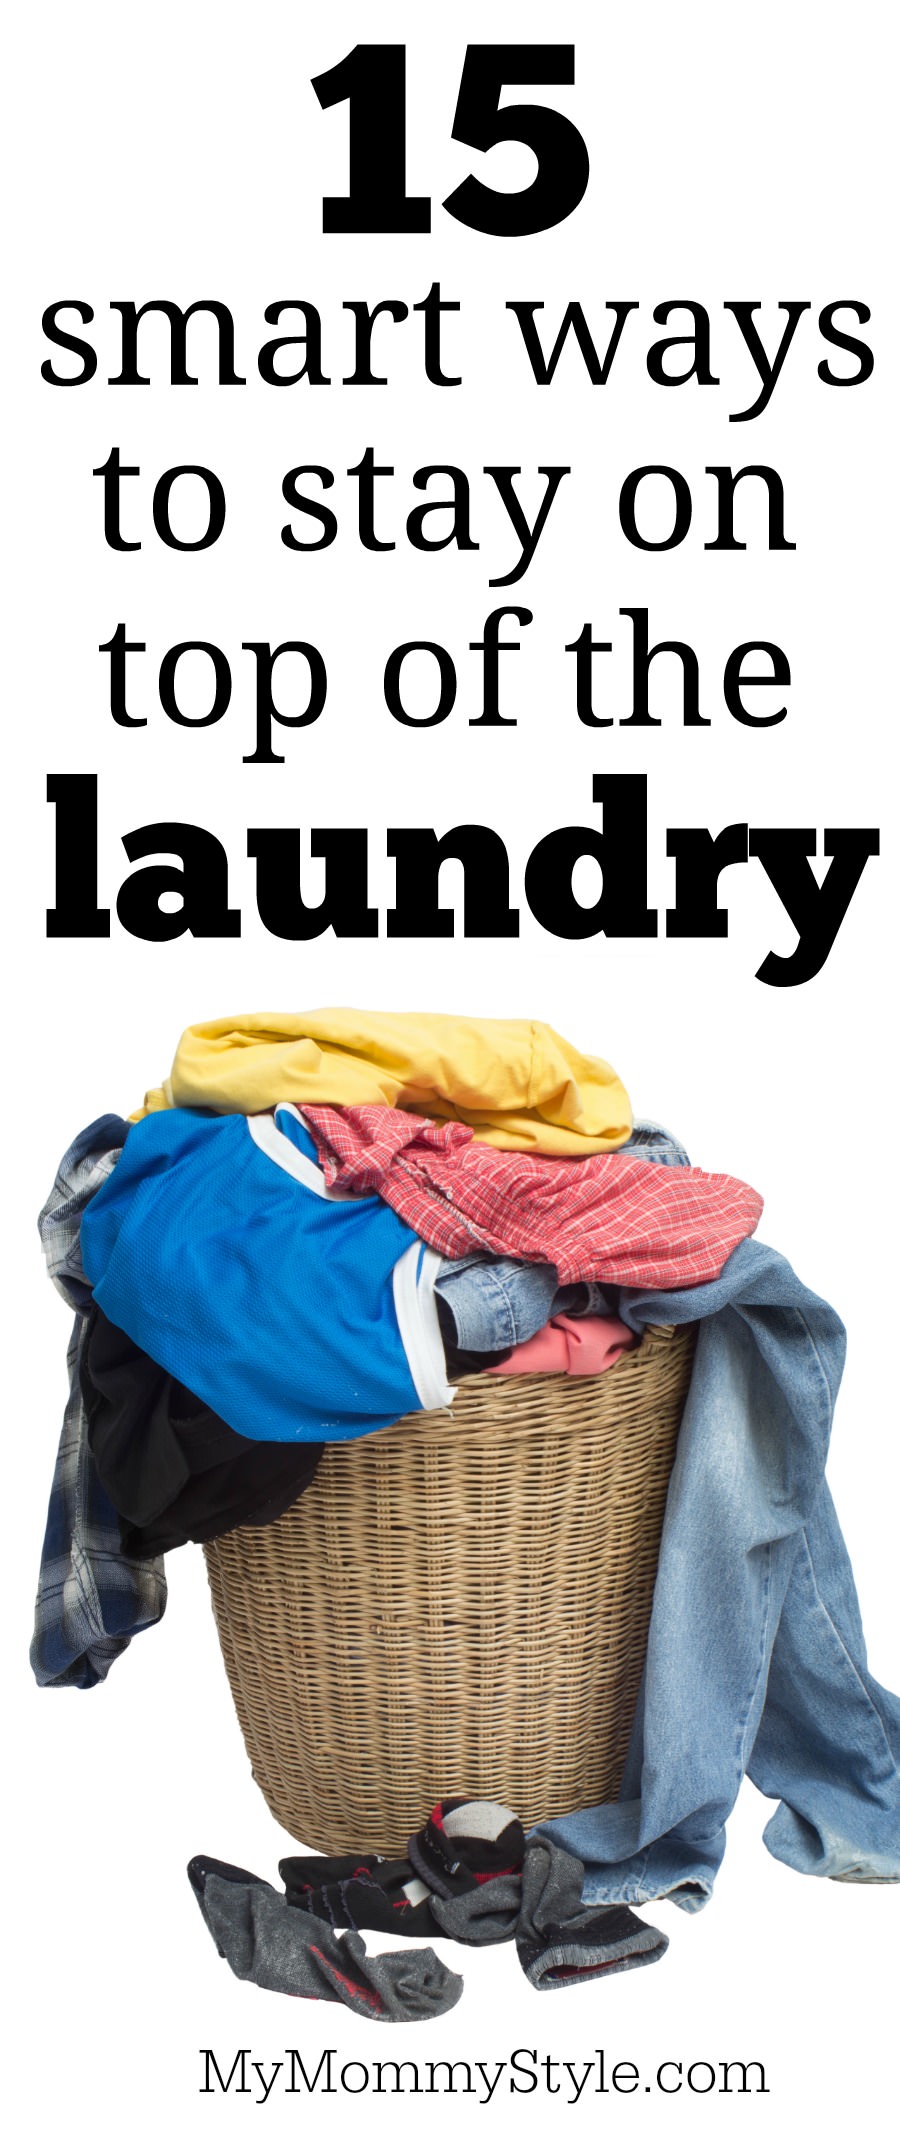 Consejos de lavandería para estar al día con la colada, las mejores ideas para hacer la colada